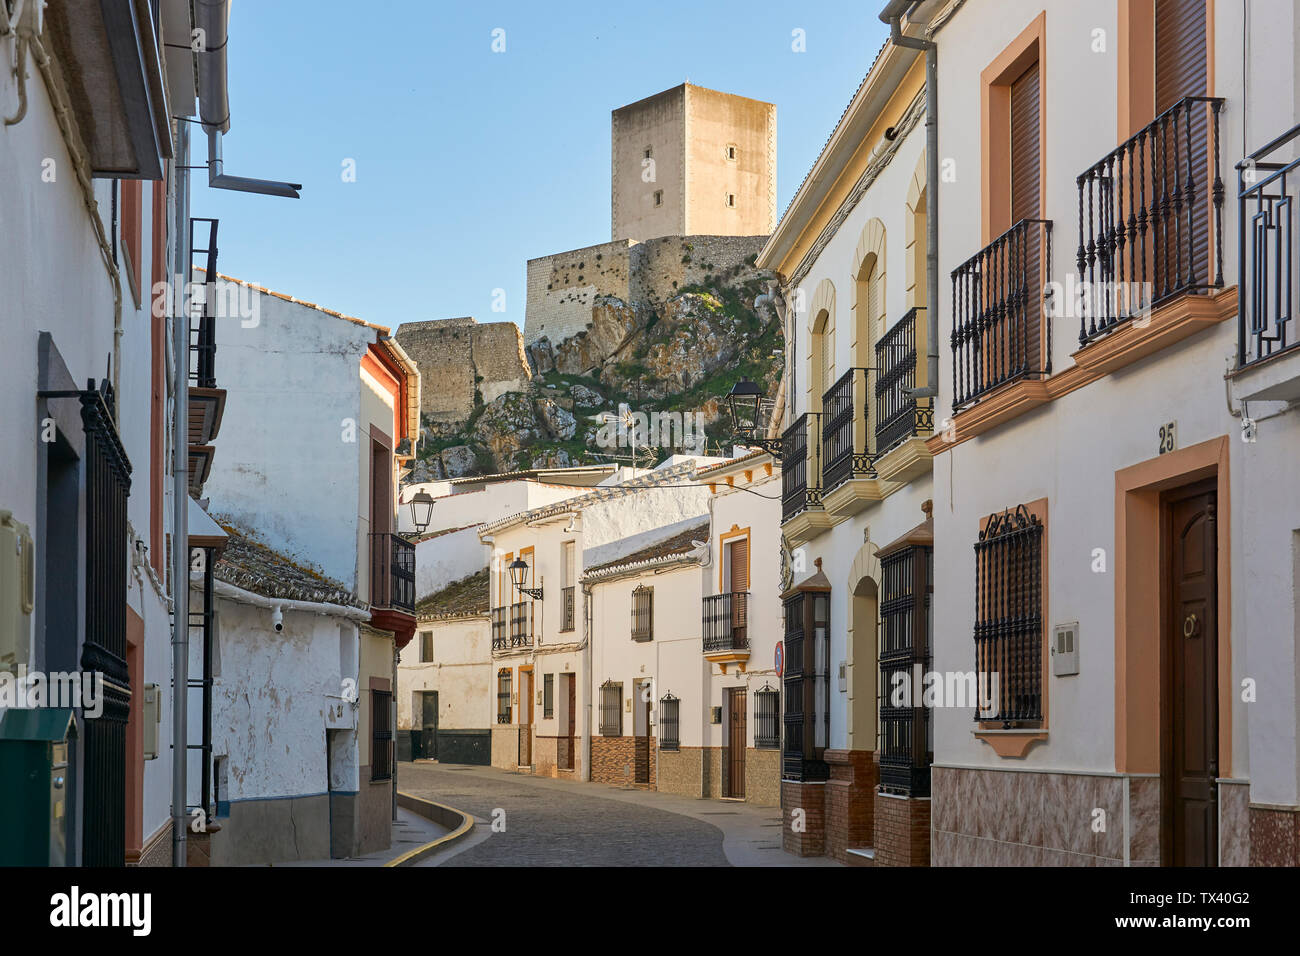 Cañete la Real Dorf in Andalusien, Malaga. Spanien Stockfoto